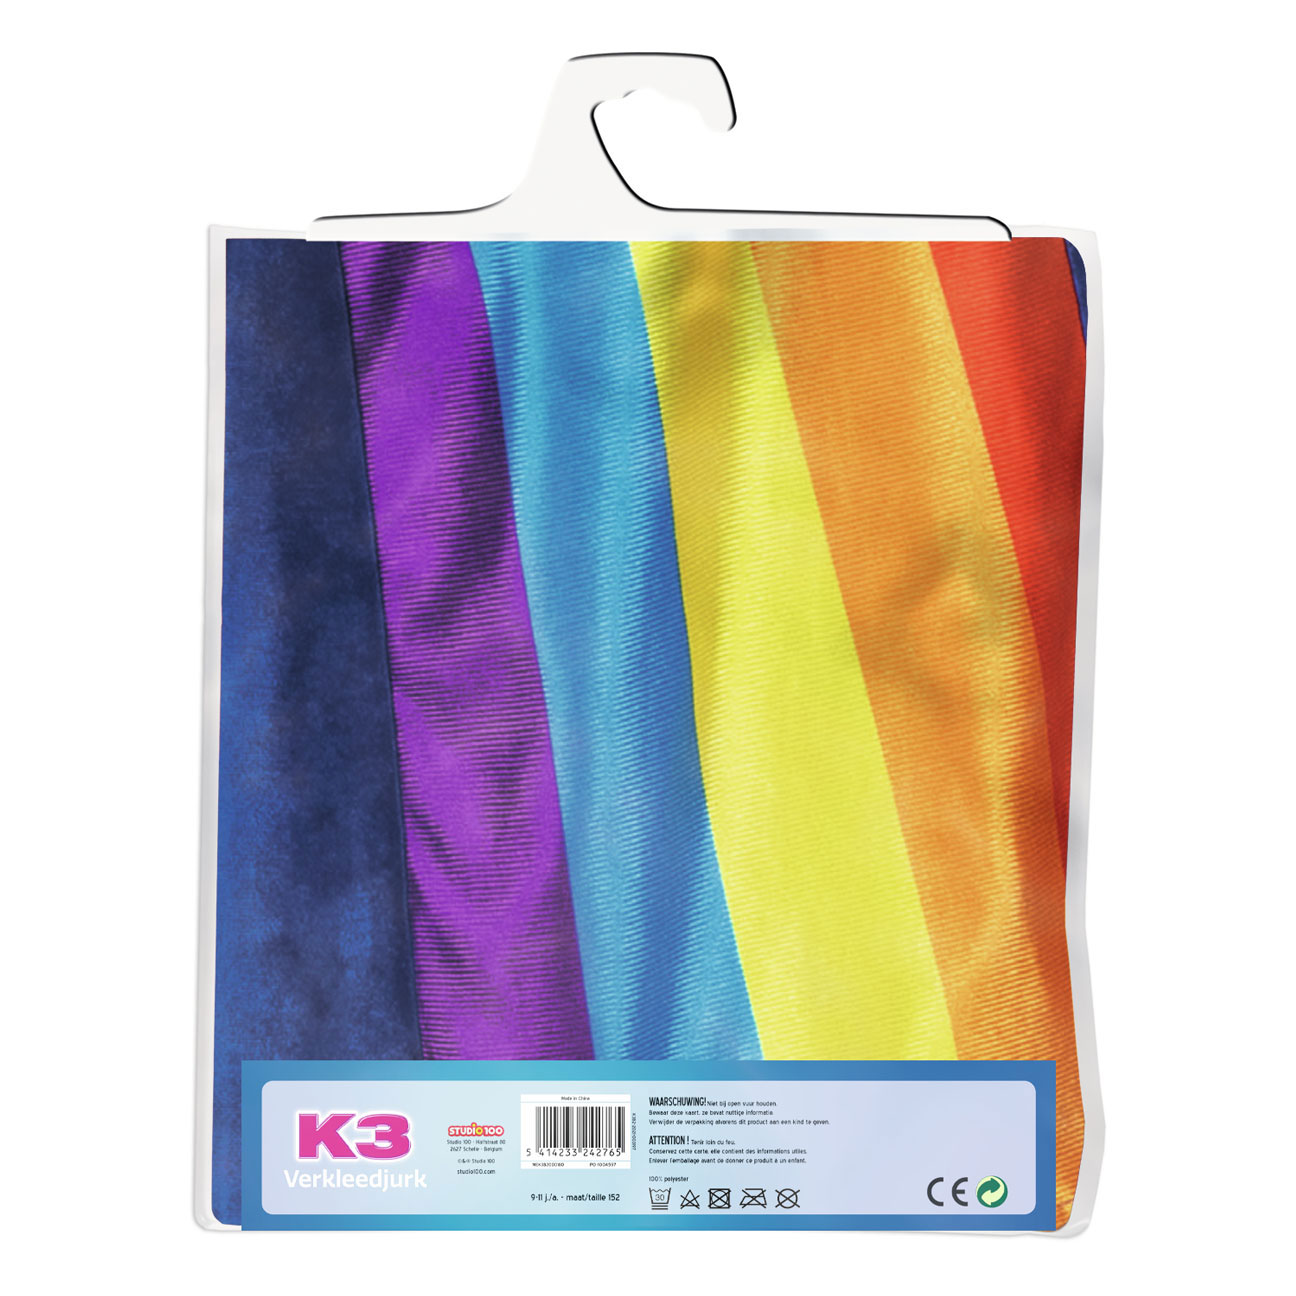 K3 Verkleedjurk - Regenboog Blauw, 9-11 jaar